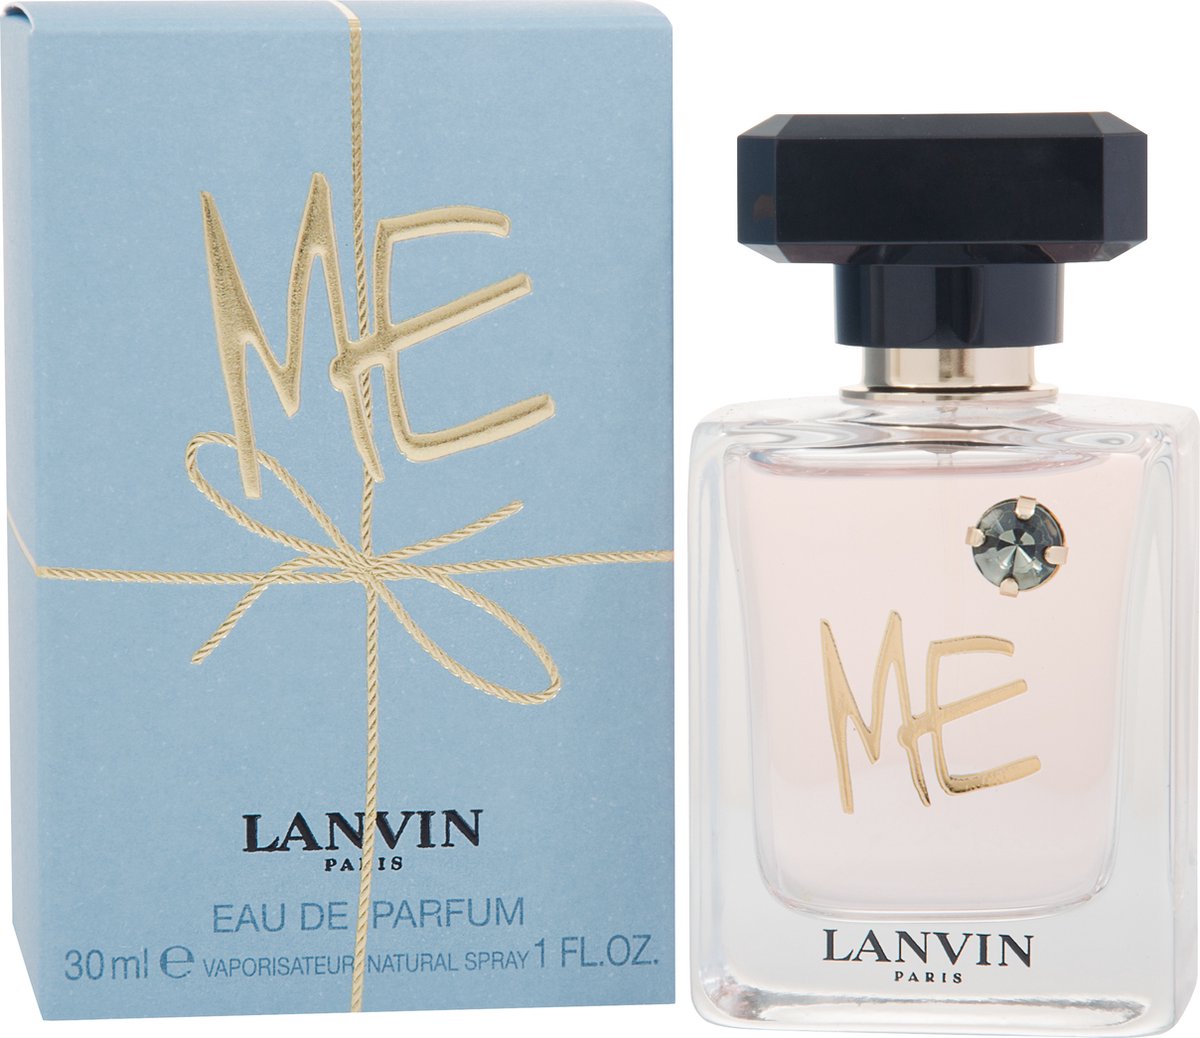 Lanvin Me - 30ml - Eau de parfum